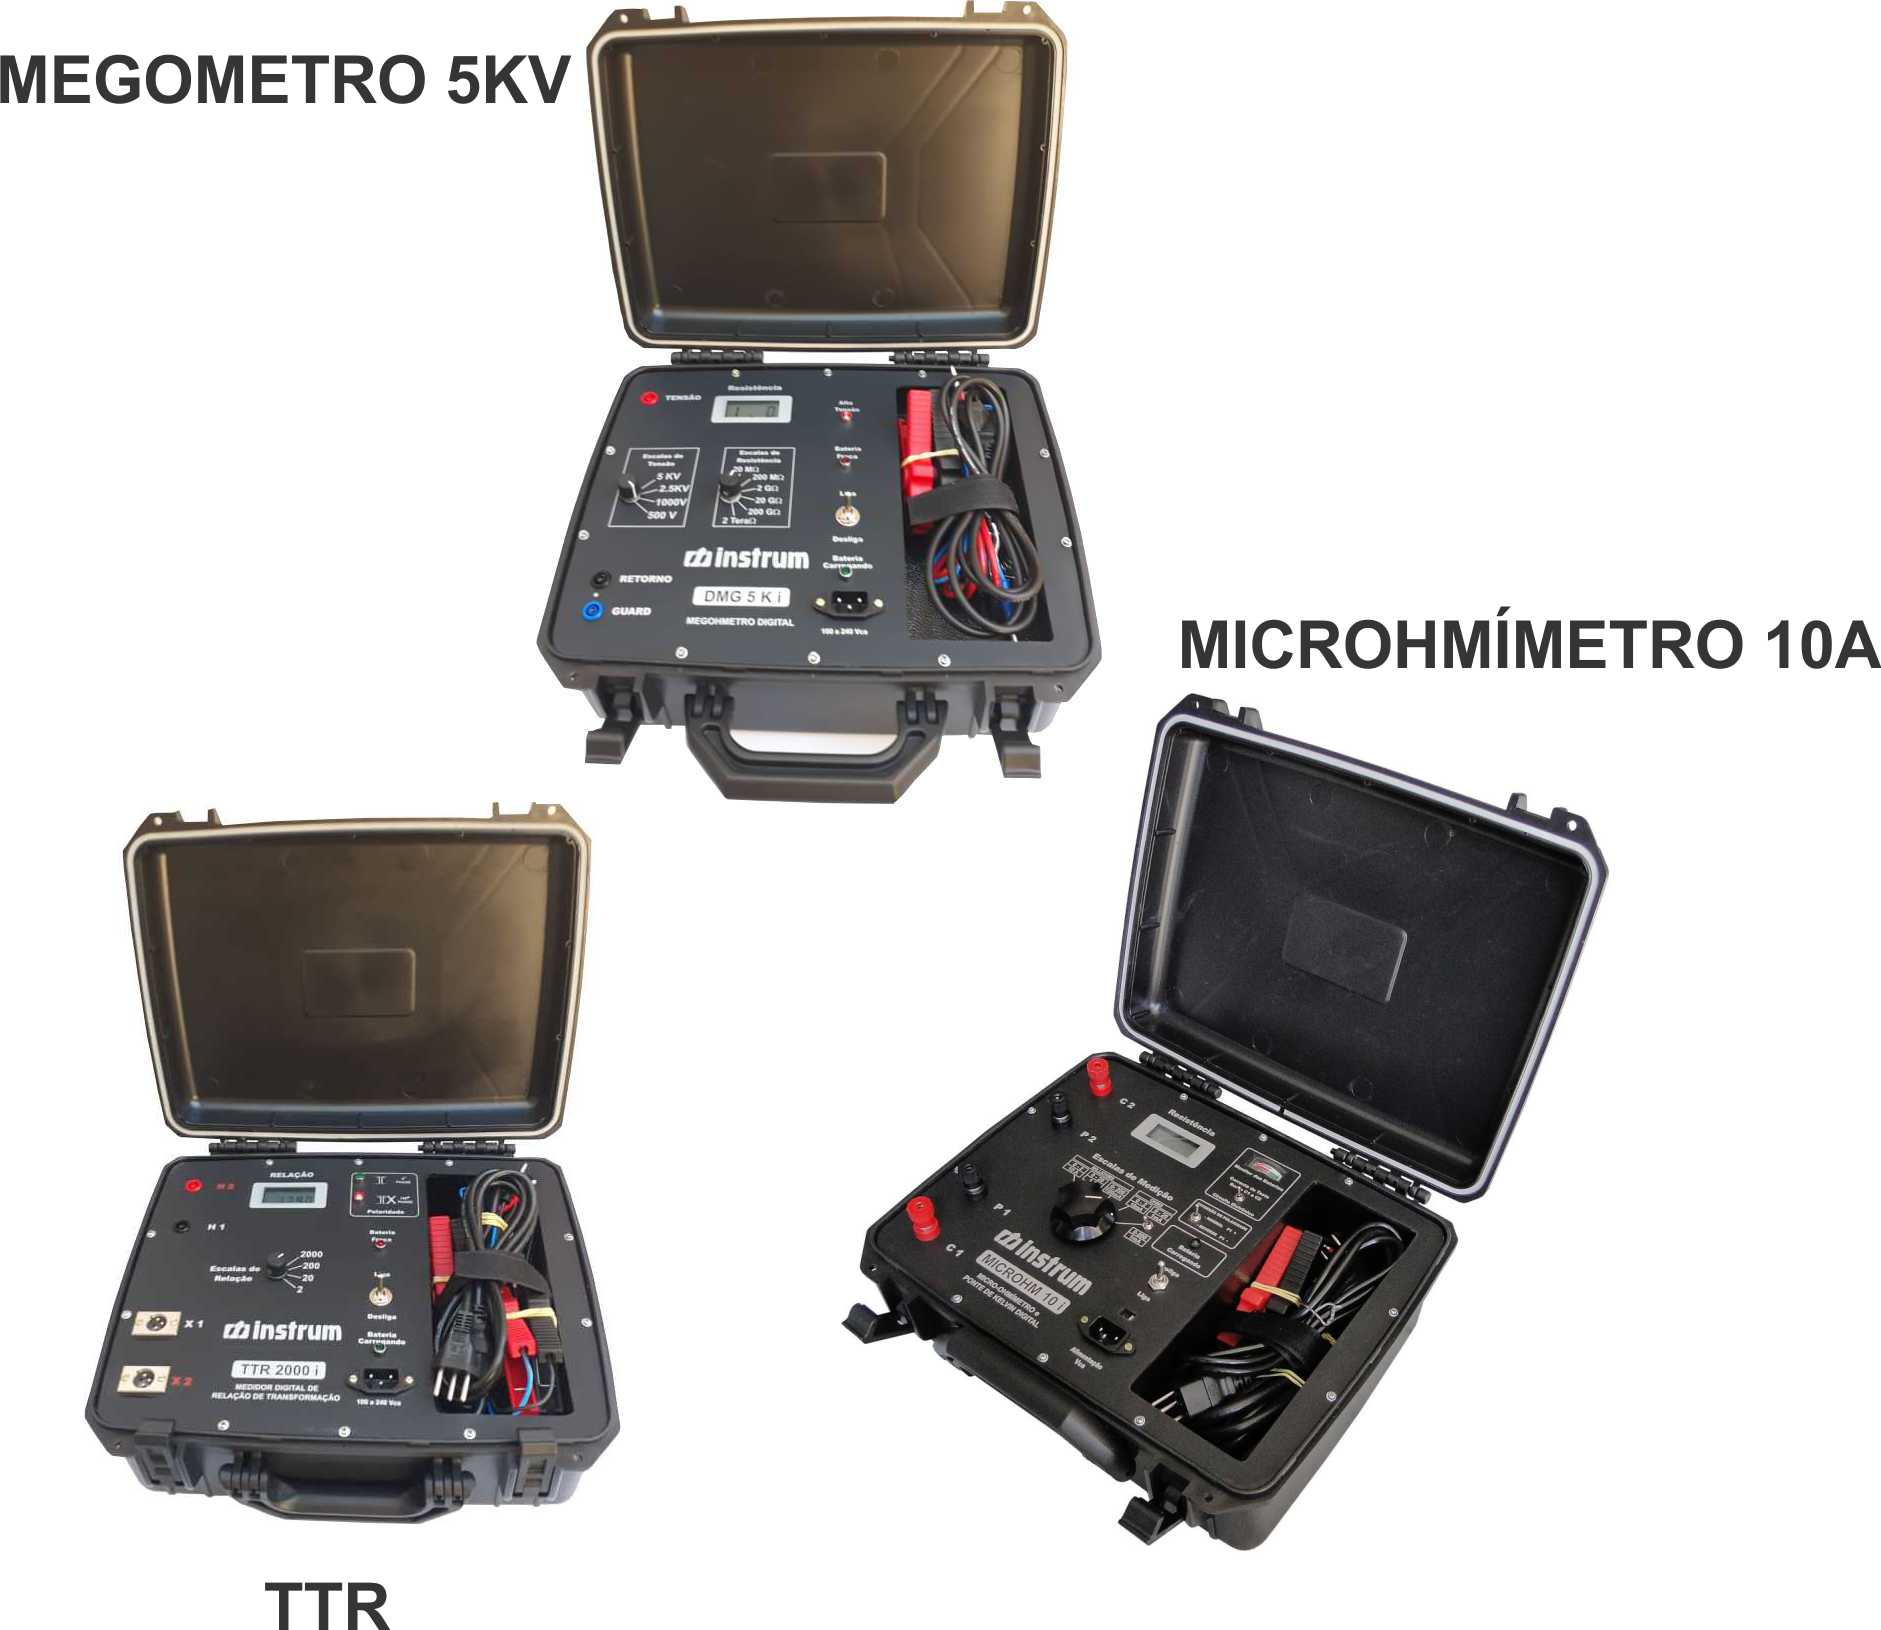 Megômetro 5KV + Microhmímetro 10A + MEDIDOR DE RELAÇÃO DE ESPIRAS "TTR" e Certificados RBC